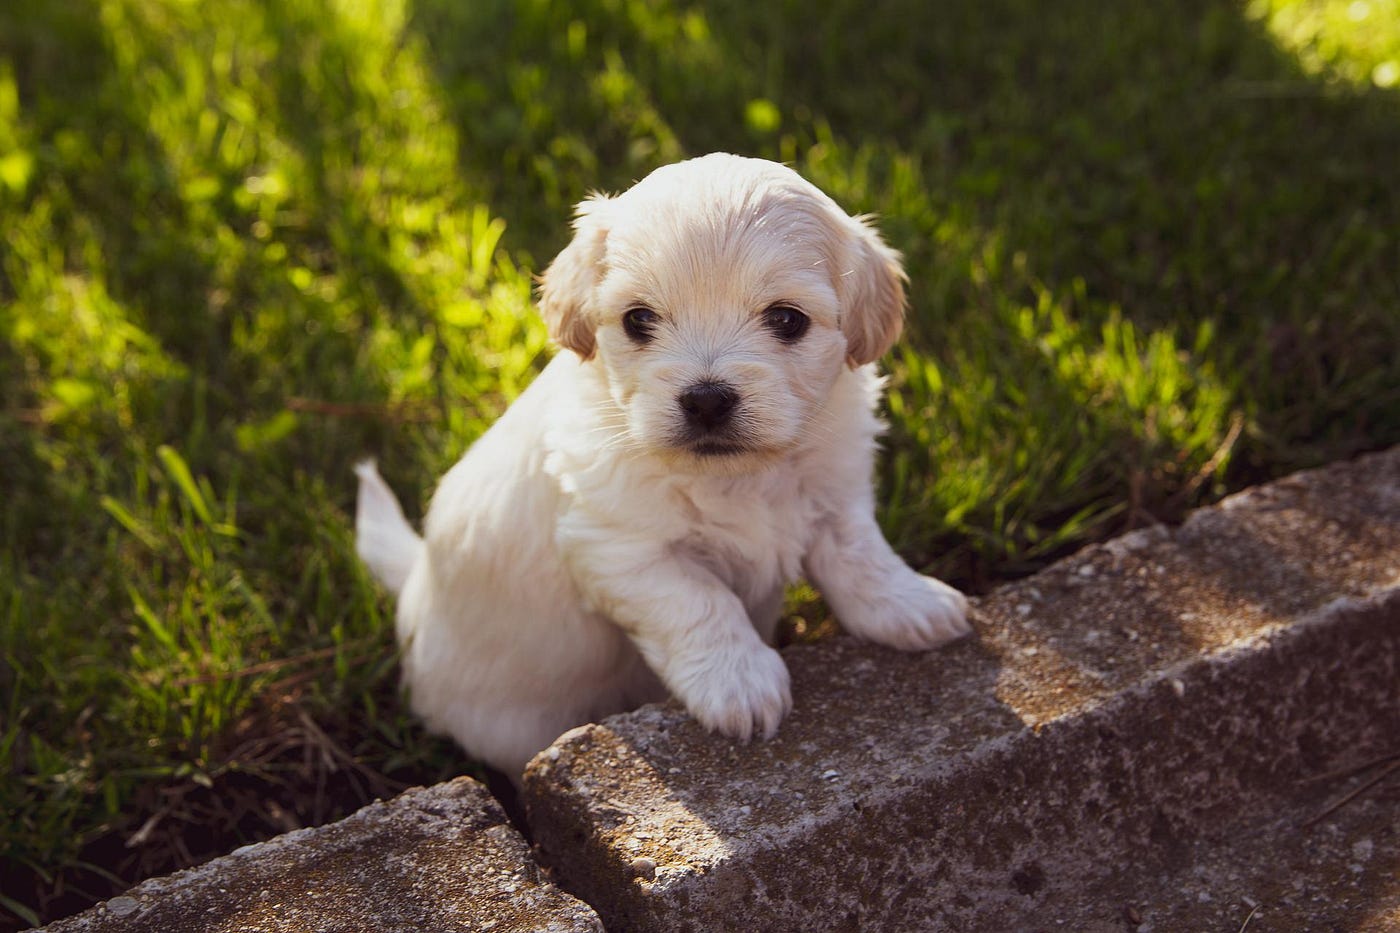 A fluffy white labrador puppy